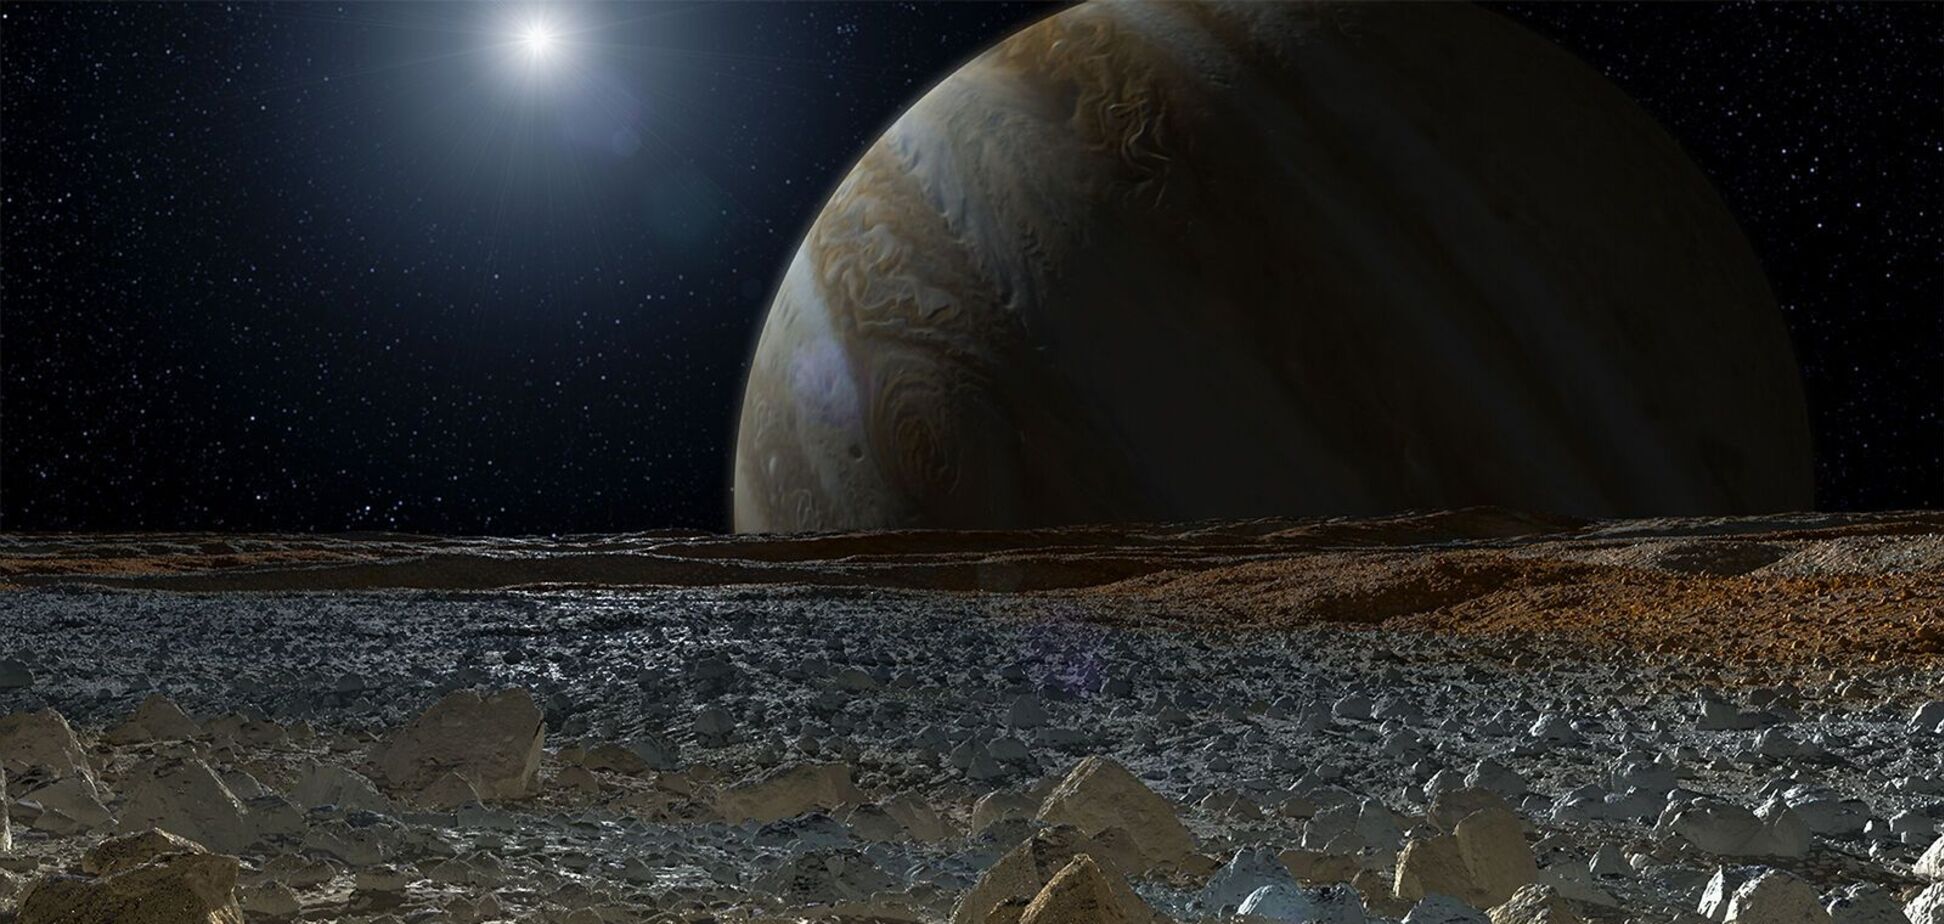 Найден порок, который мог 'убить' жизнь на ледяном спутнике Юпитера